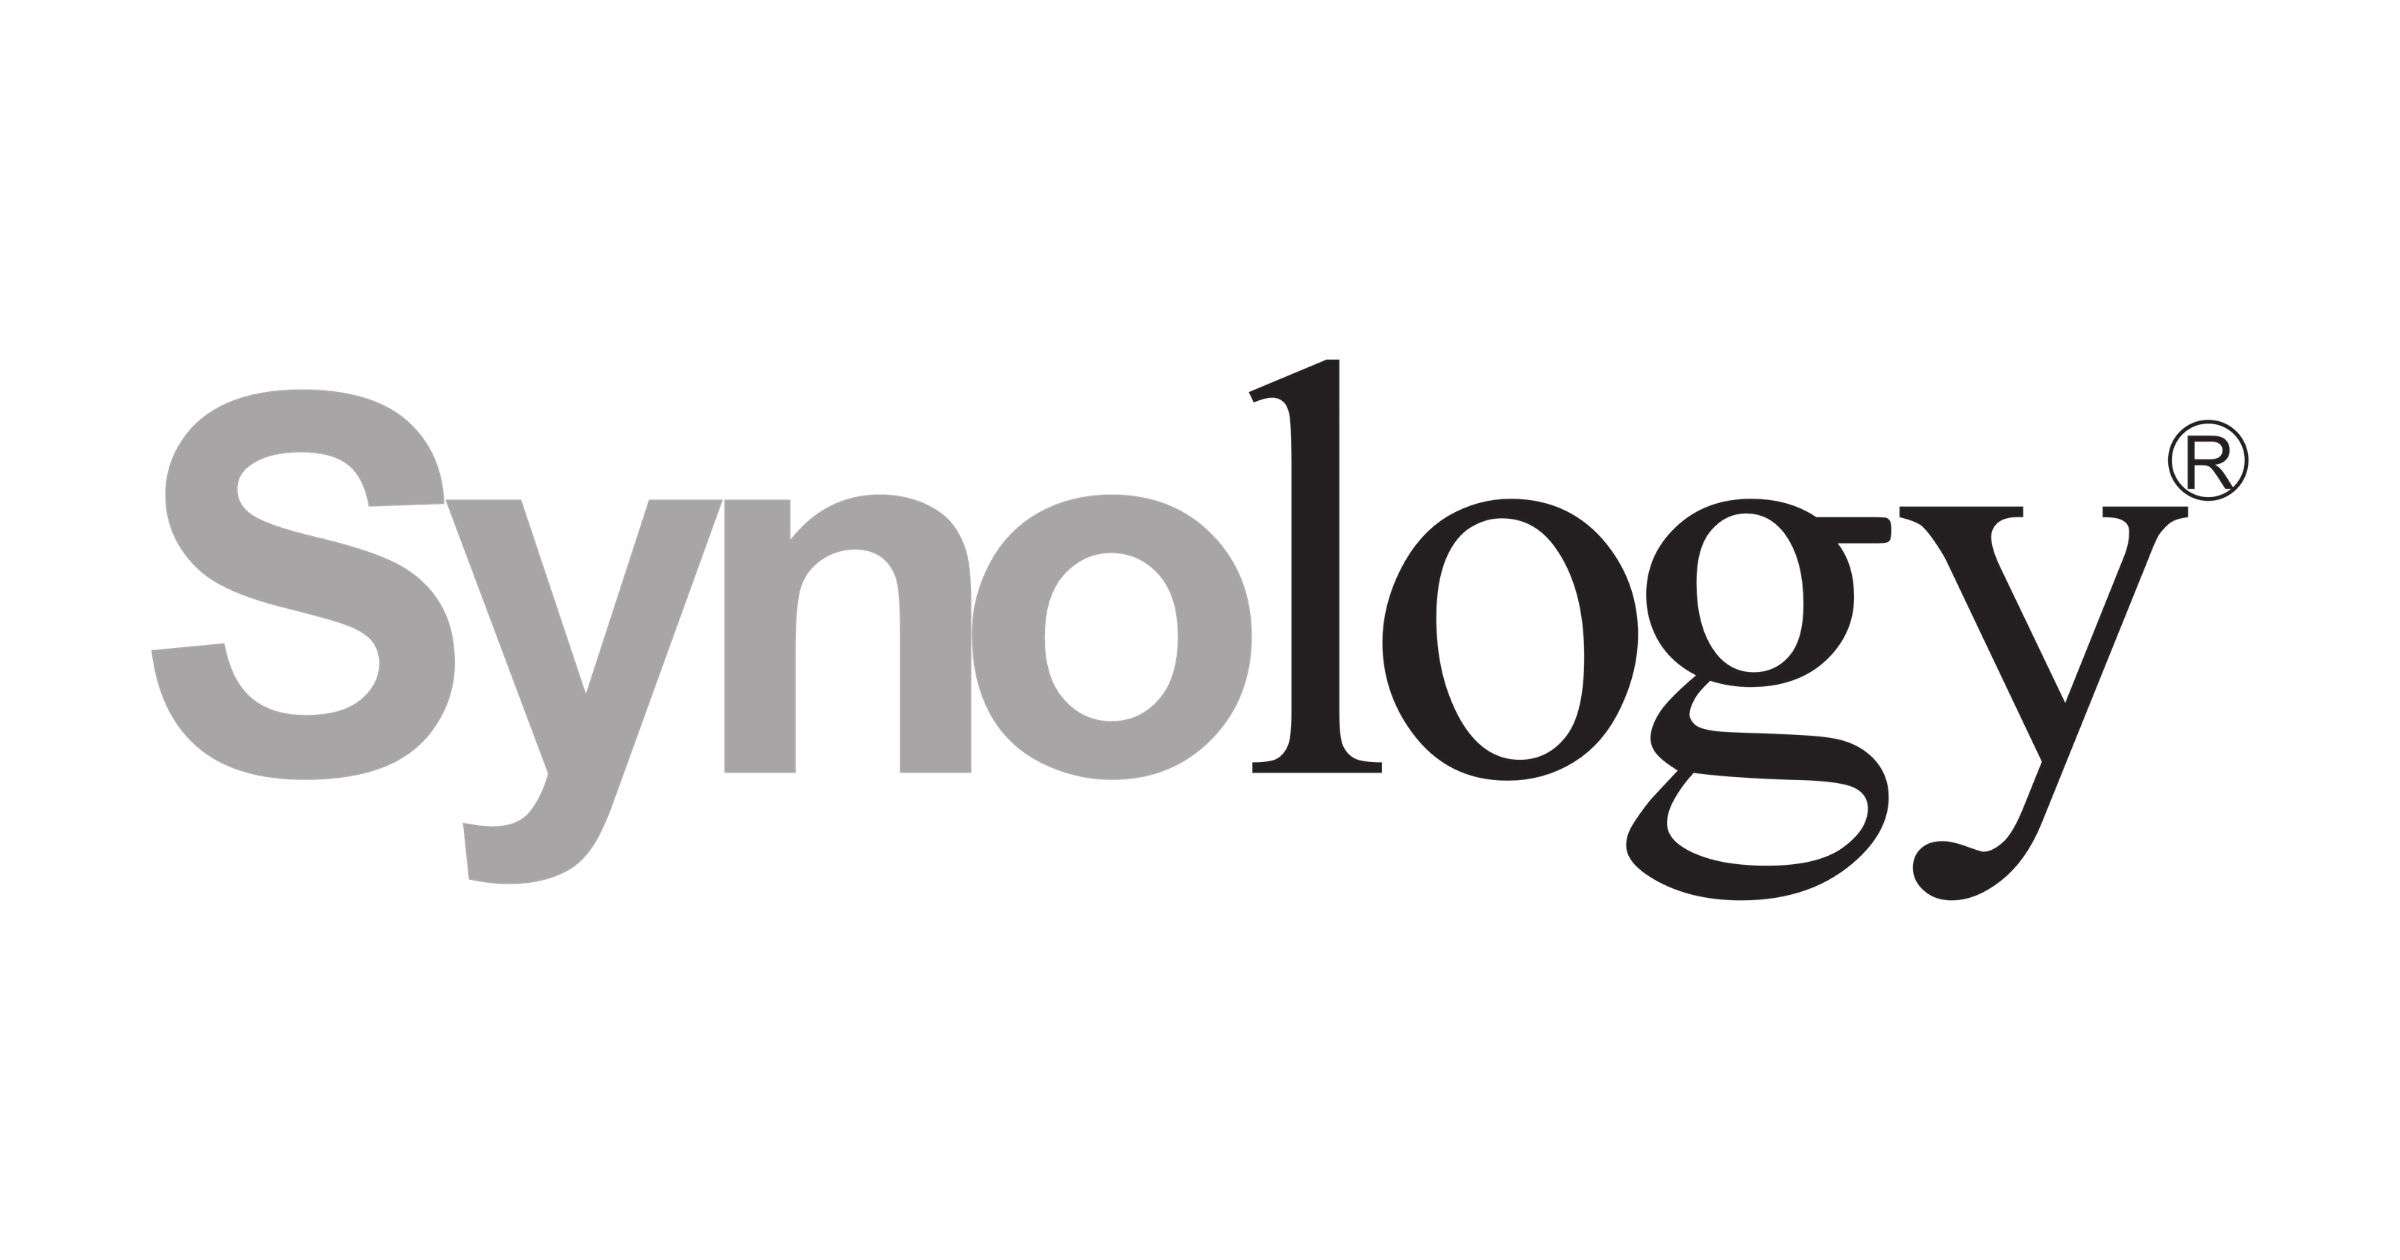 „Rozpoczynamy pracę z Synology"